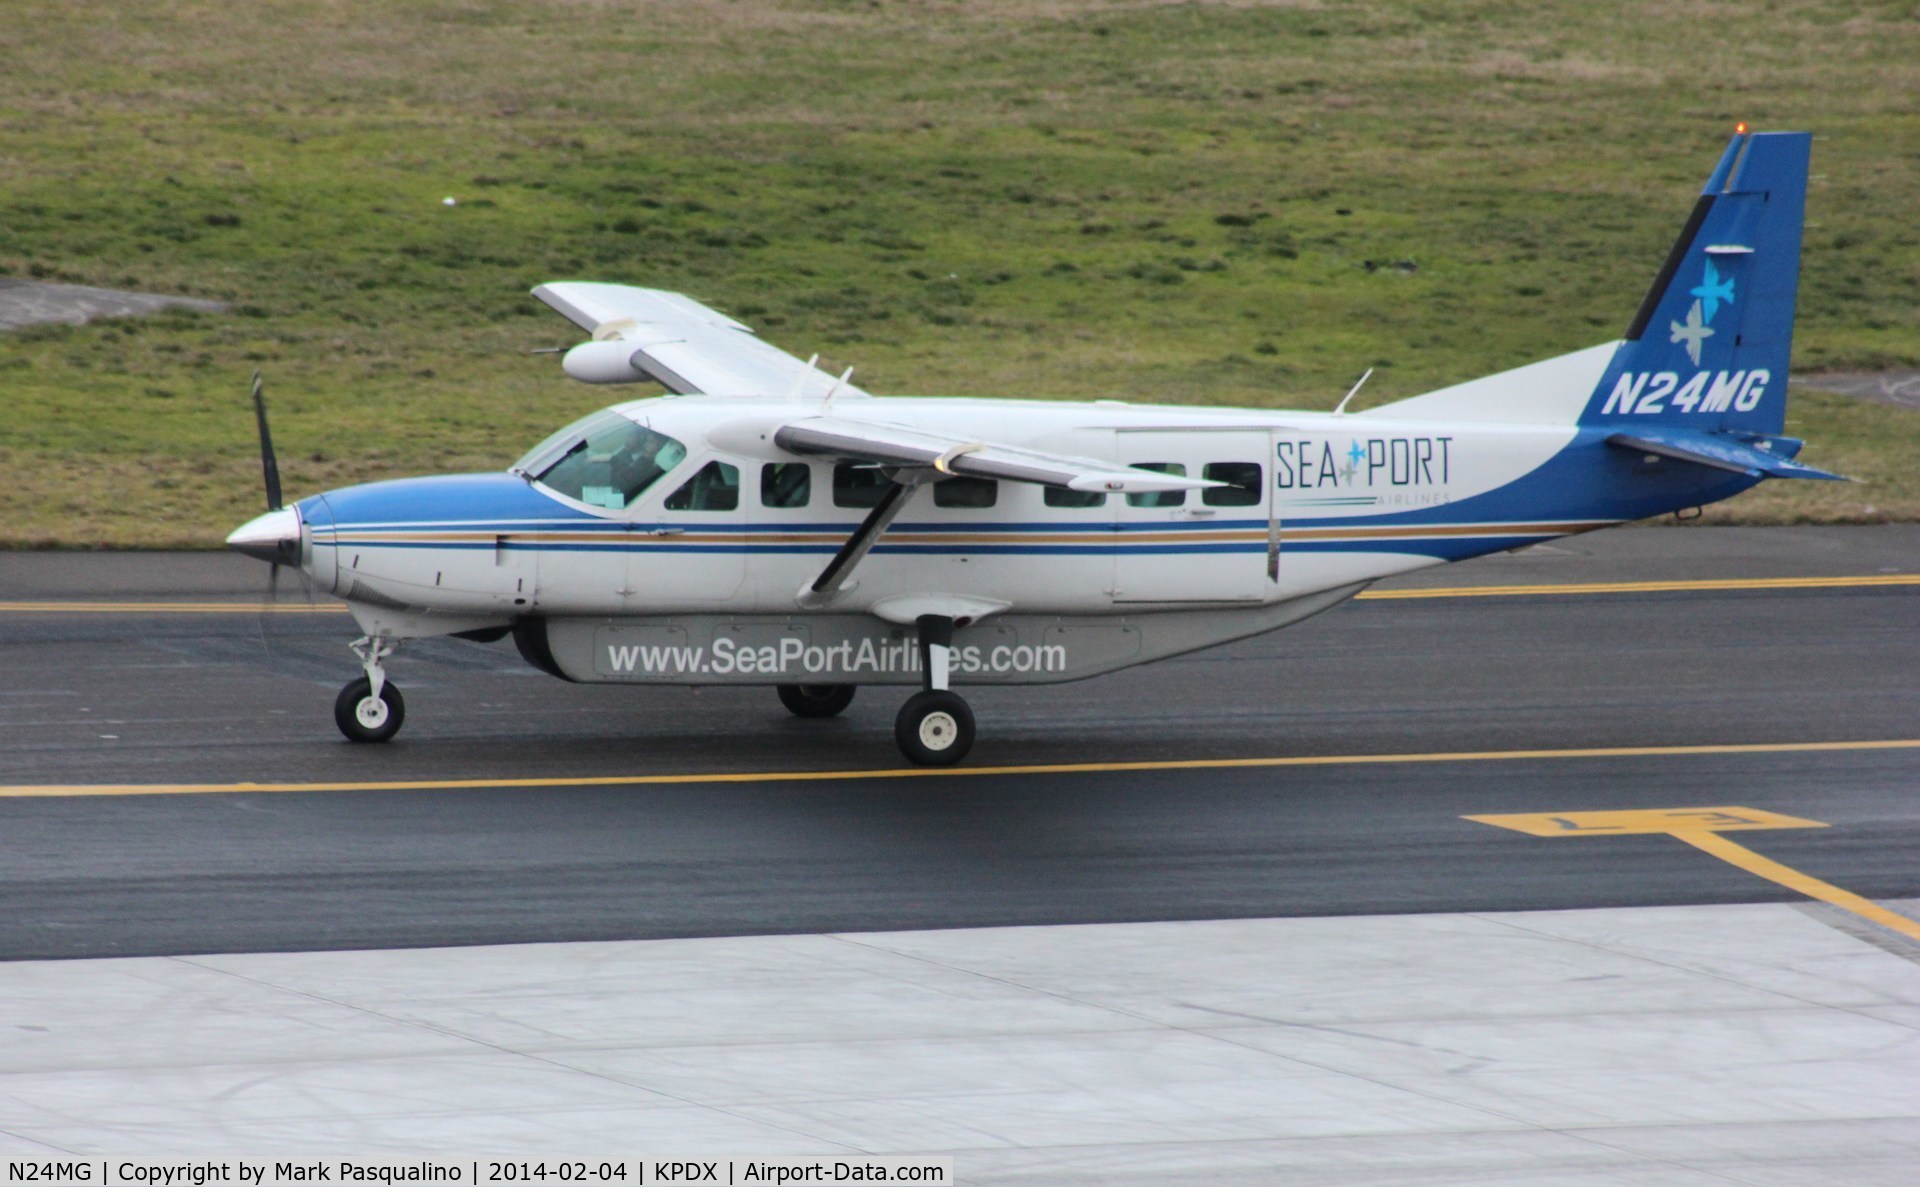 N24MG, 2000 Cessna 208B Grand Caravan C/N 208B0850, Cessna 208B